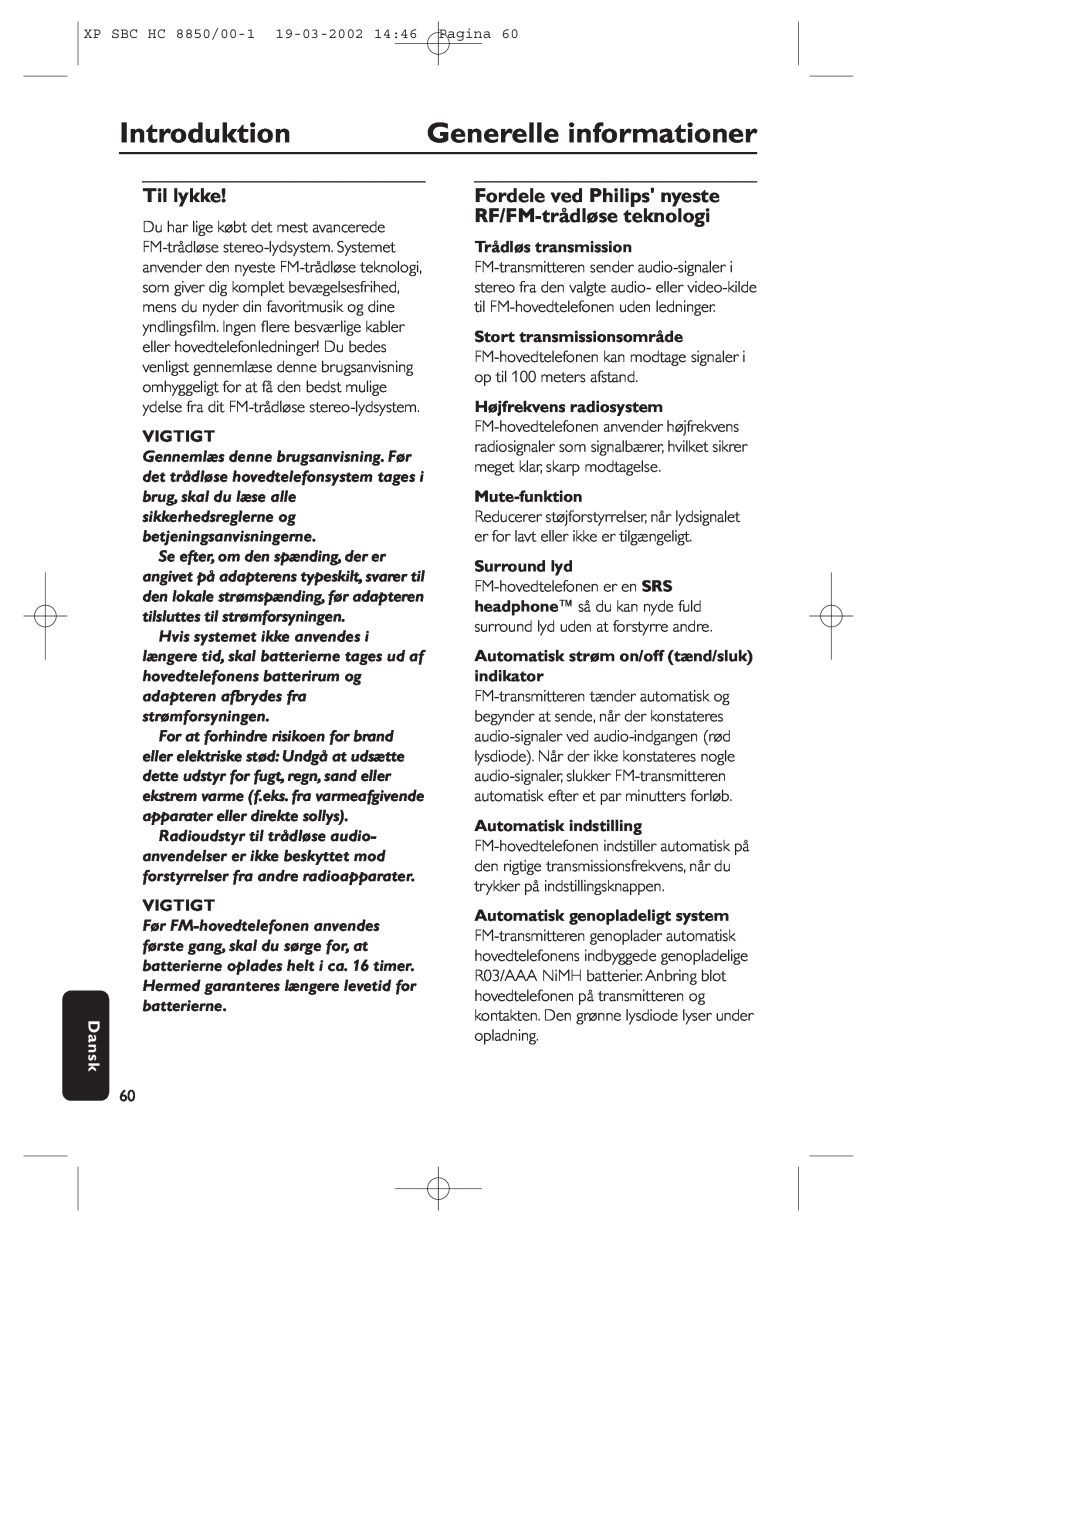 Philips HC8850 manual Introduktion, Generelle informationer, Til lykke, Vigtigt, Dansk, Trådløs transmission, Mute-funktion 